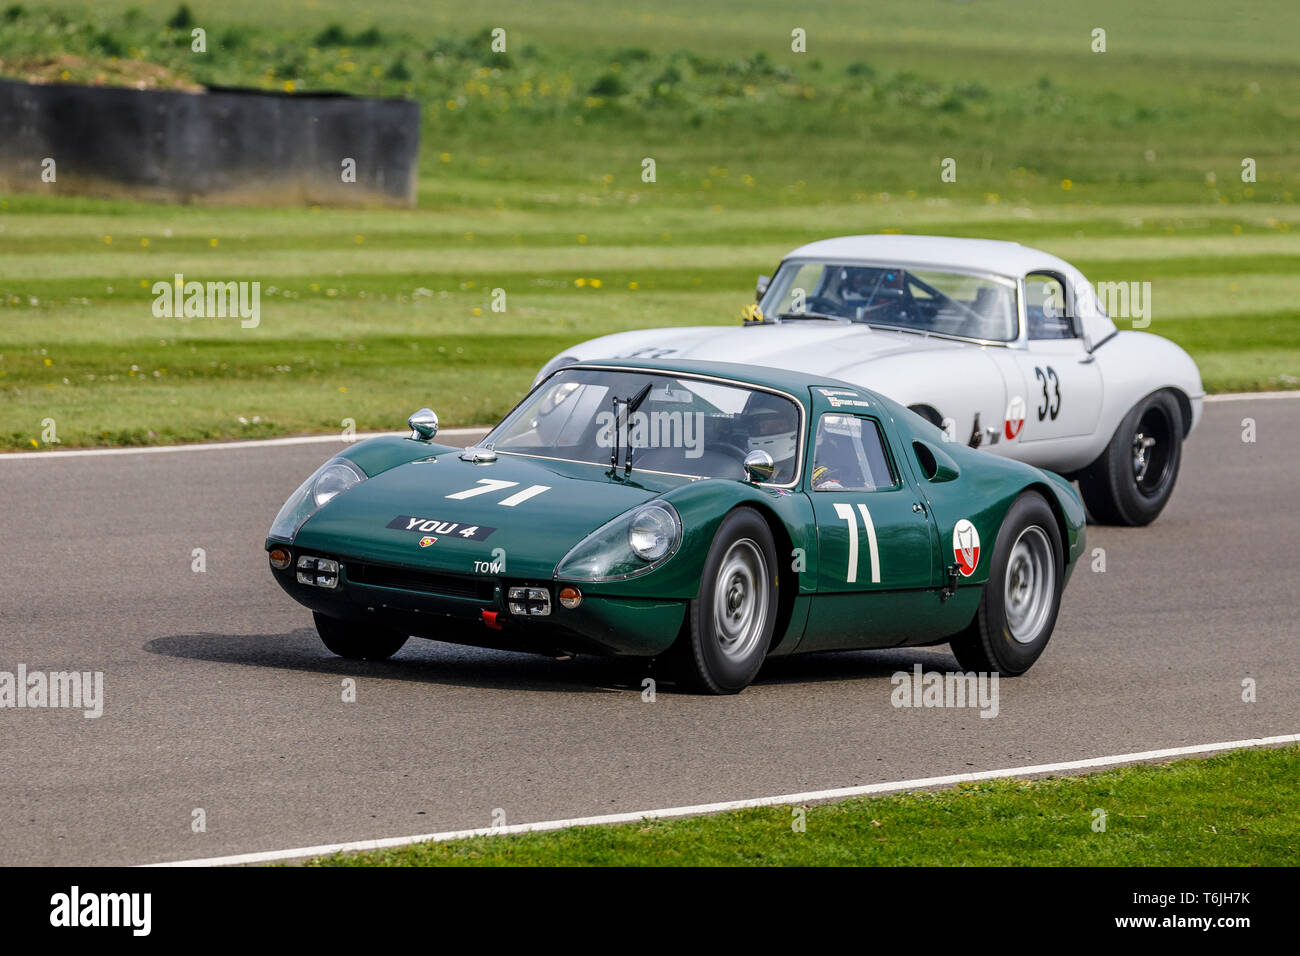 Grahan Hill Trophy course avec 1964 Porsche 904 carrera GTS et 1963 Jaguar E-Type 'semi-léger. 77e réunion des membres GRRC Goodwood, Sussex, UK. Banque D'Images